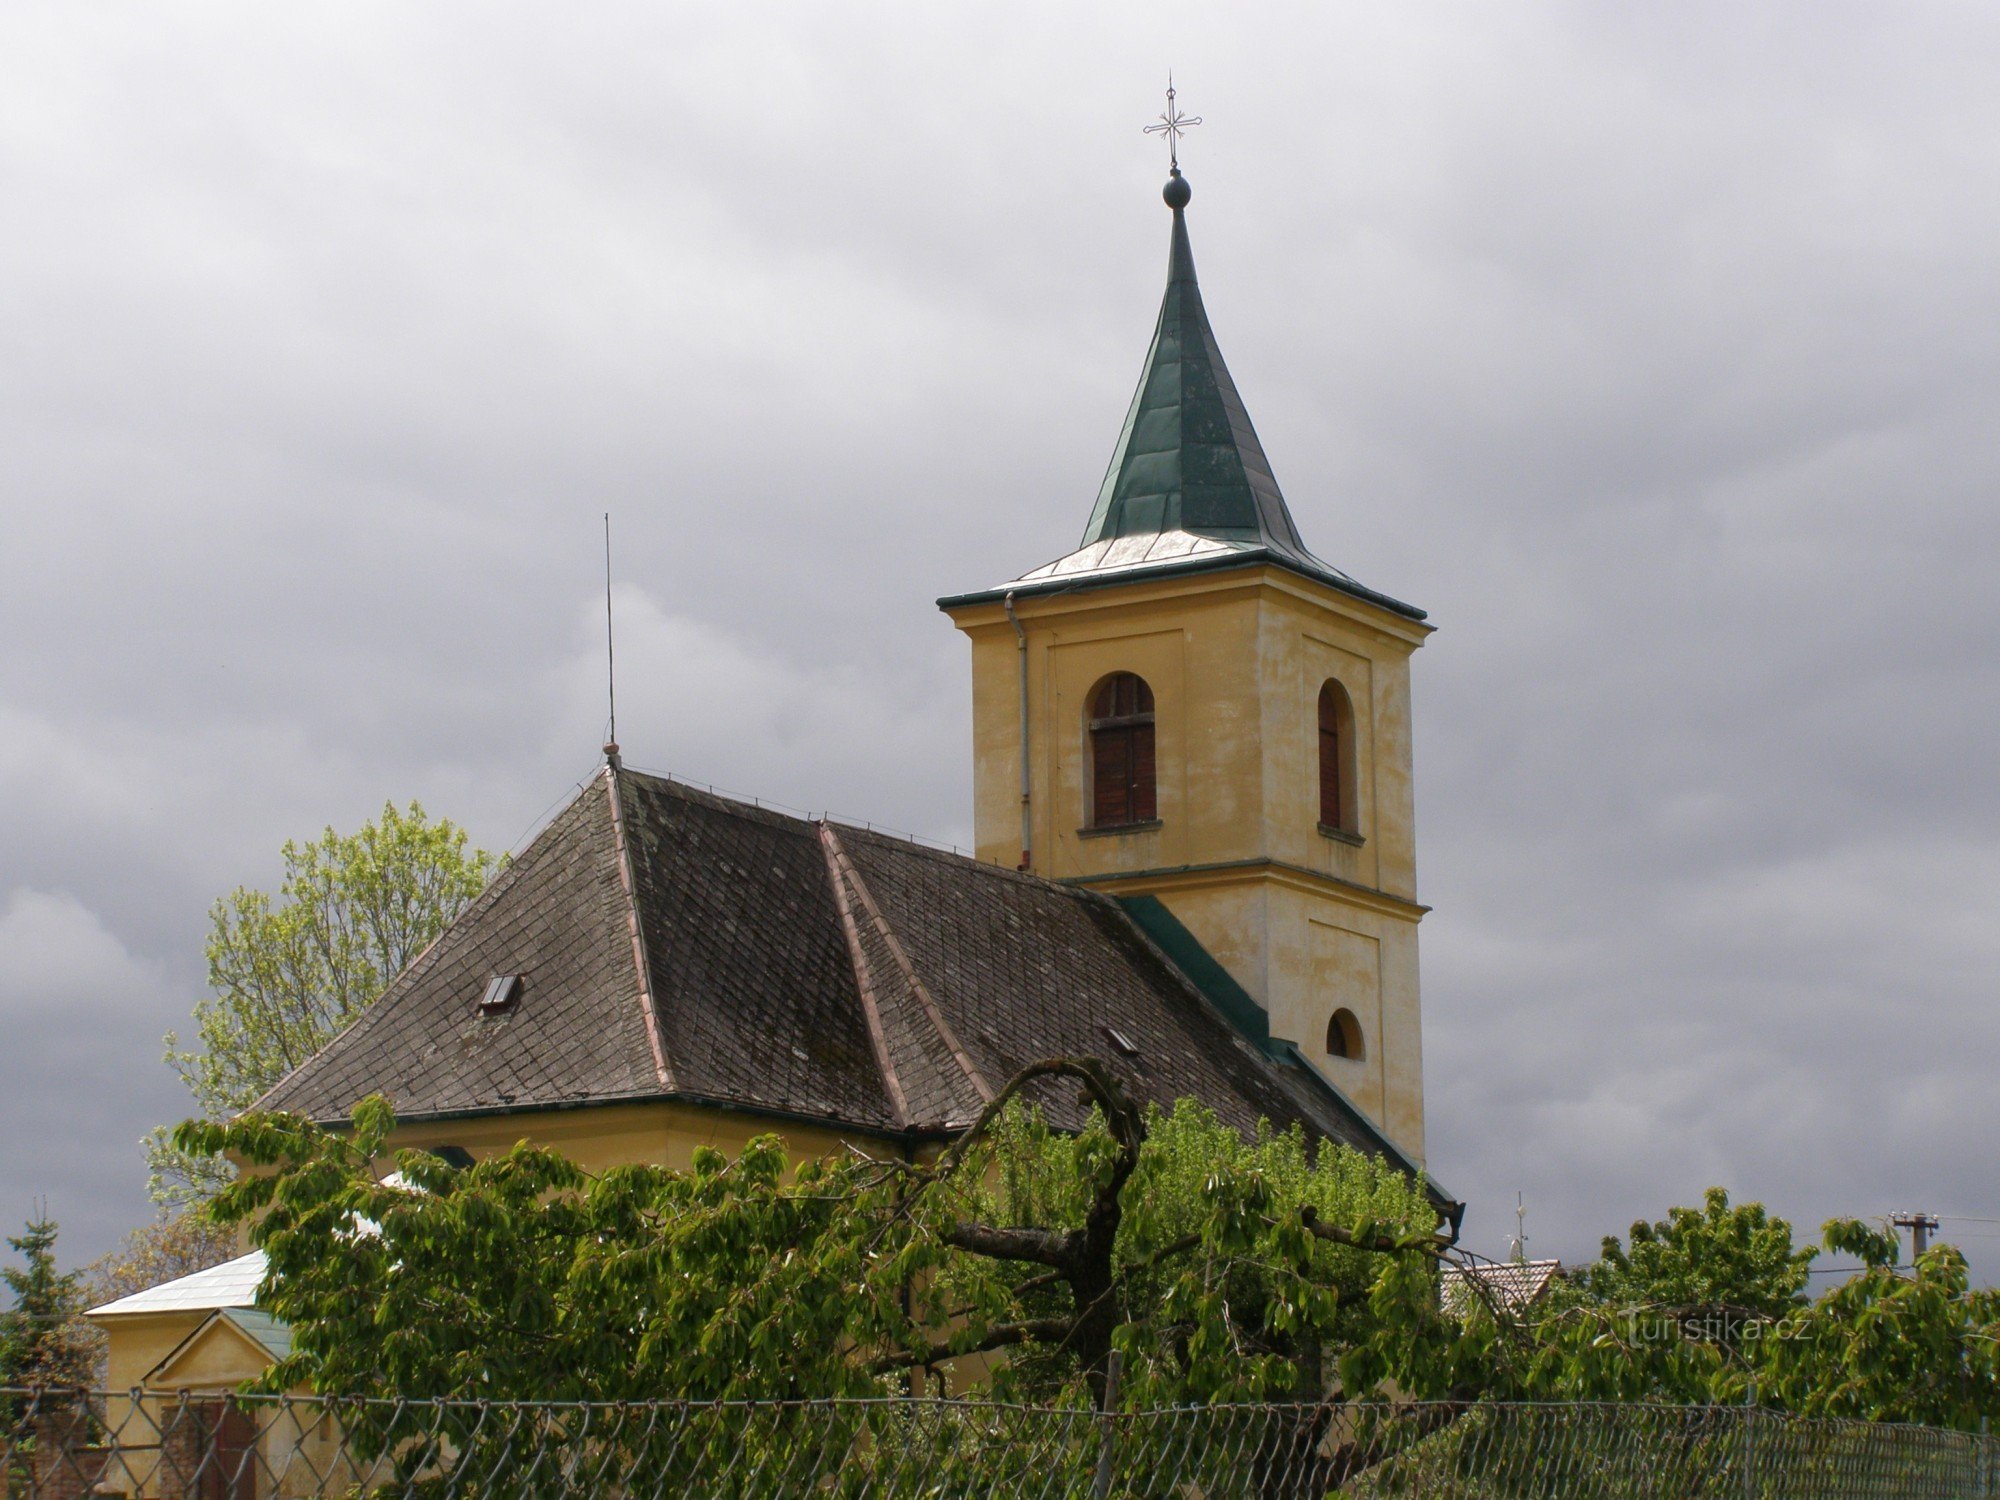 Boharyné - Pyhän Nikolauksen kirkko Bartolomeus